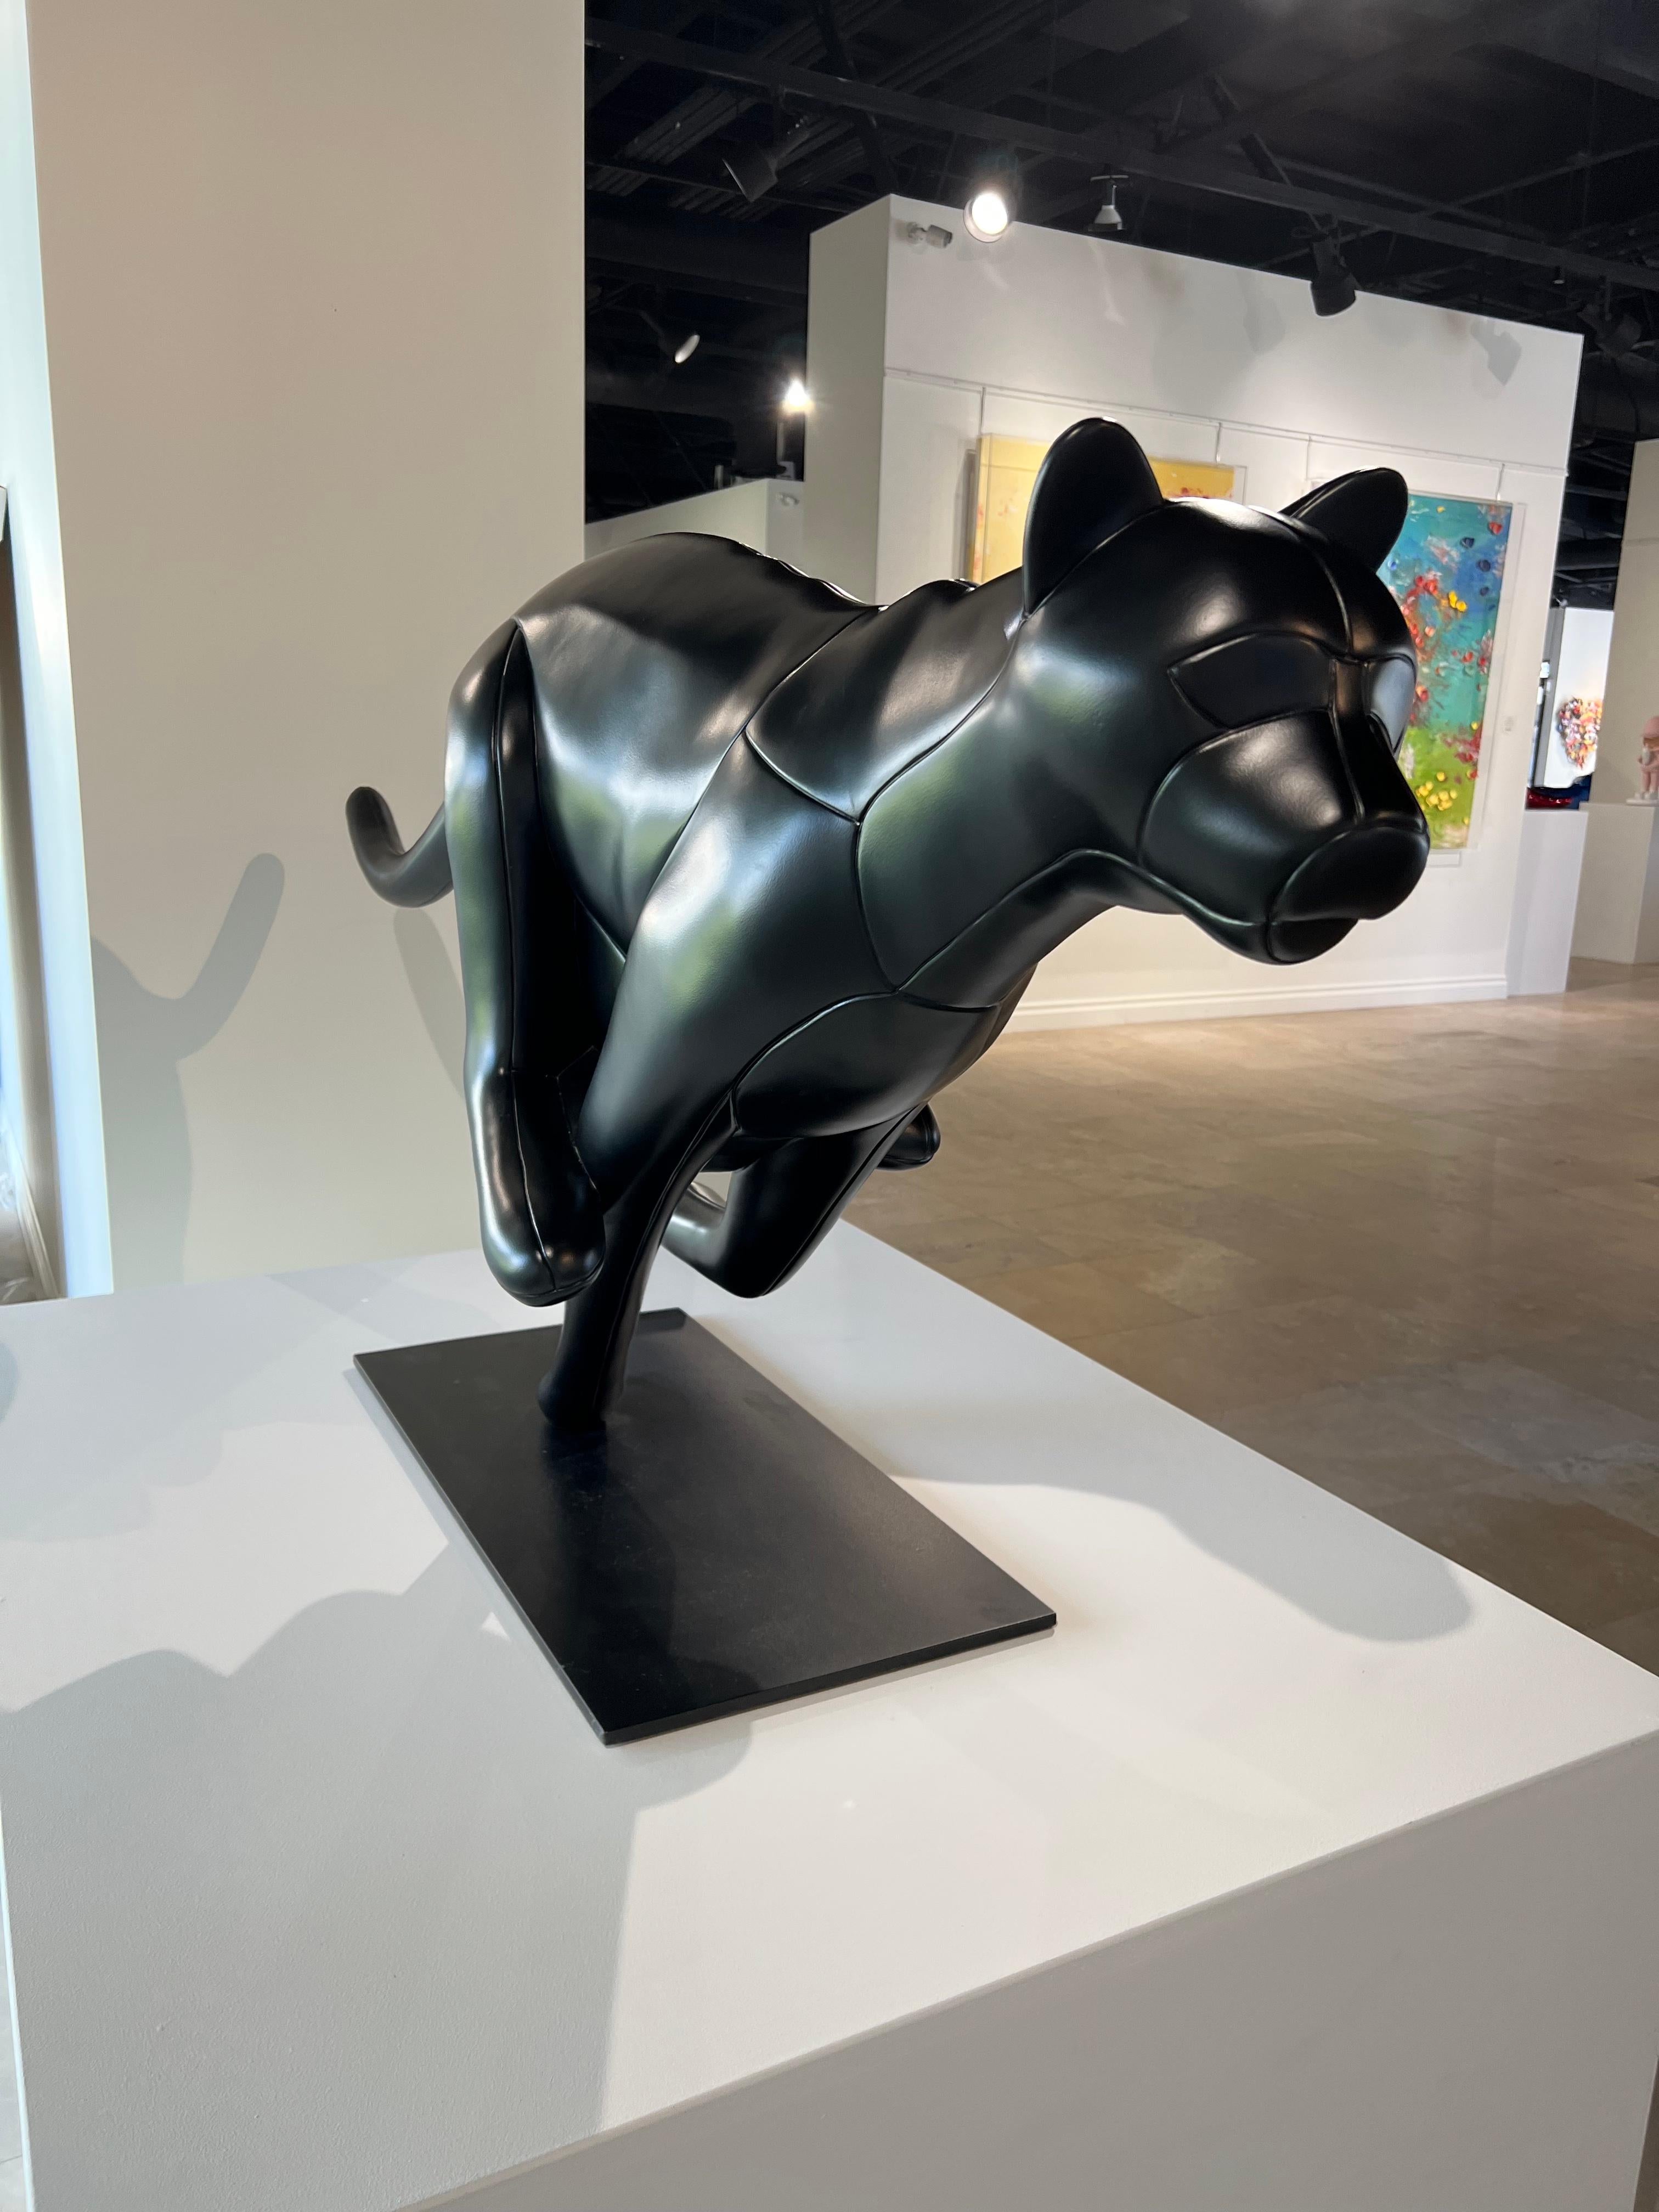 Christopher Schulz est un sculpteur né en Californie en 1974. Reconnu pour le style minimaliste et épuré de ses sculptures en métal, Schulz représente des sujets tels que des requins, des éléphants et des motos. Il travaille principalement l'acier